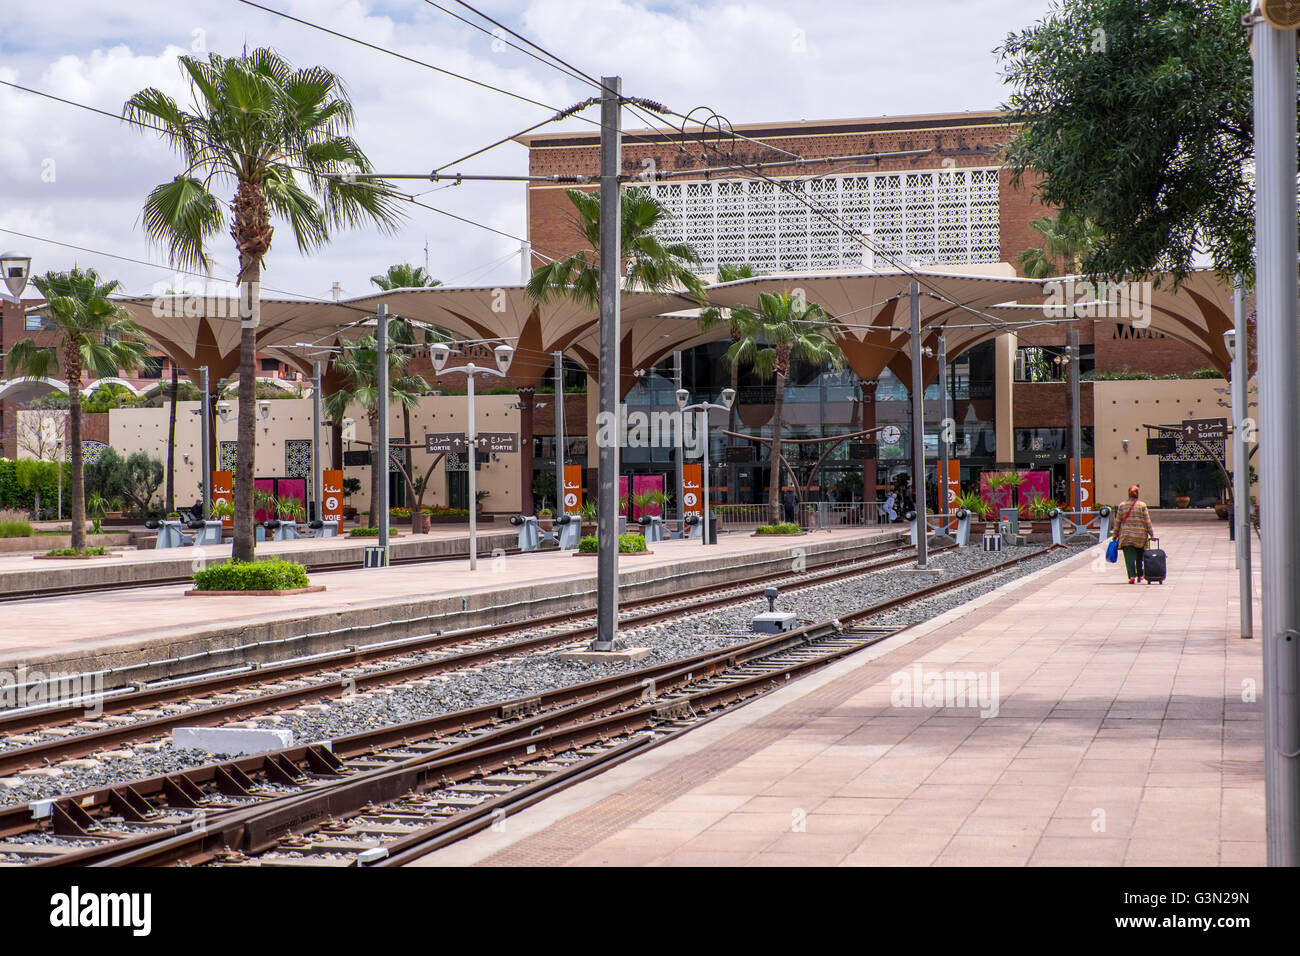 Der Bahnhof in Marrakech/Marrakesch, Marokko Stockfoto